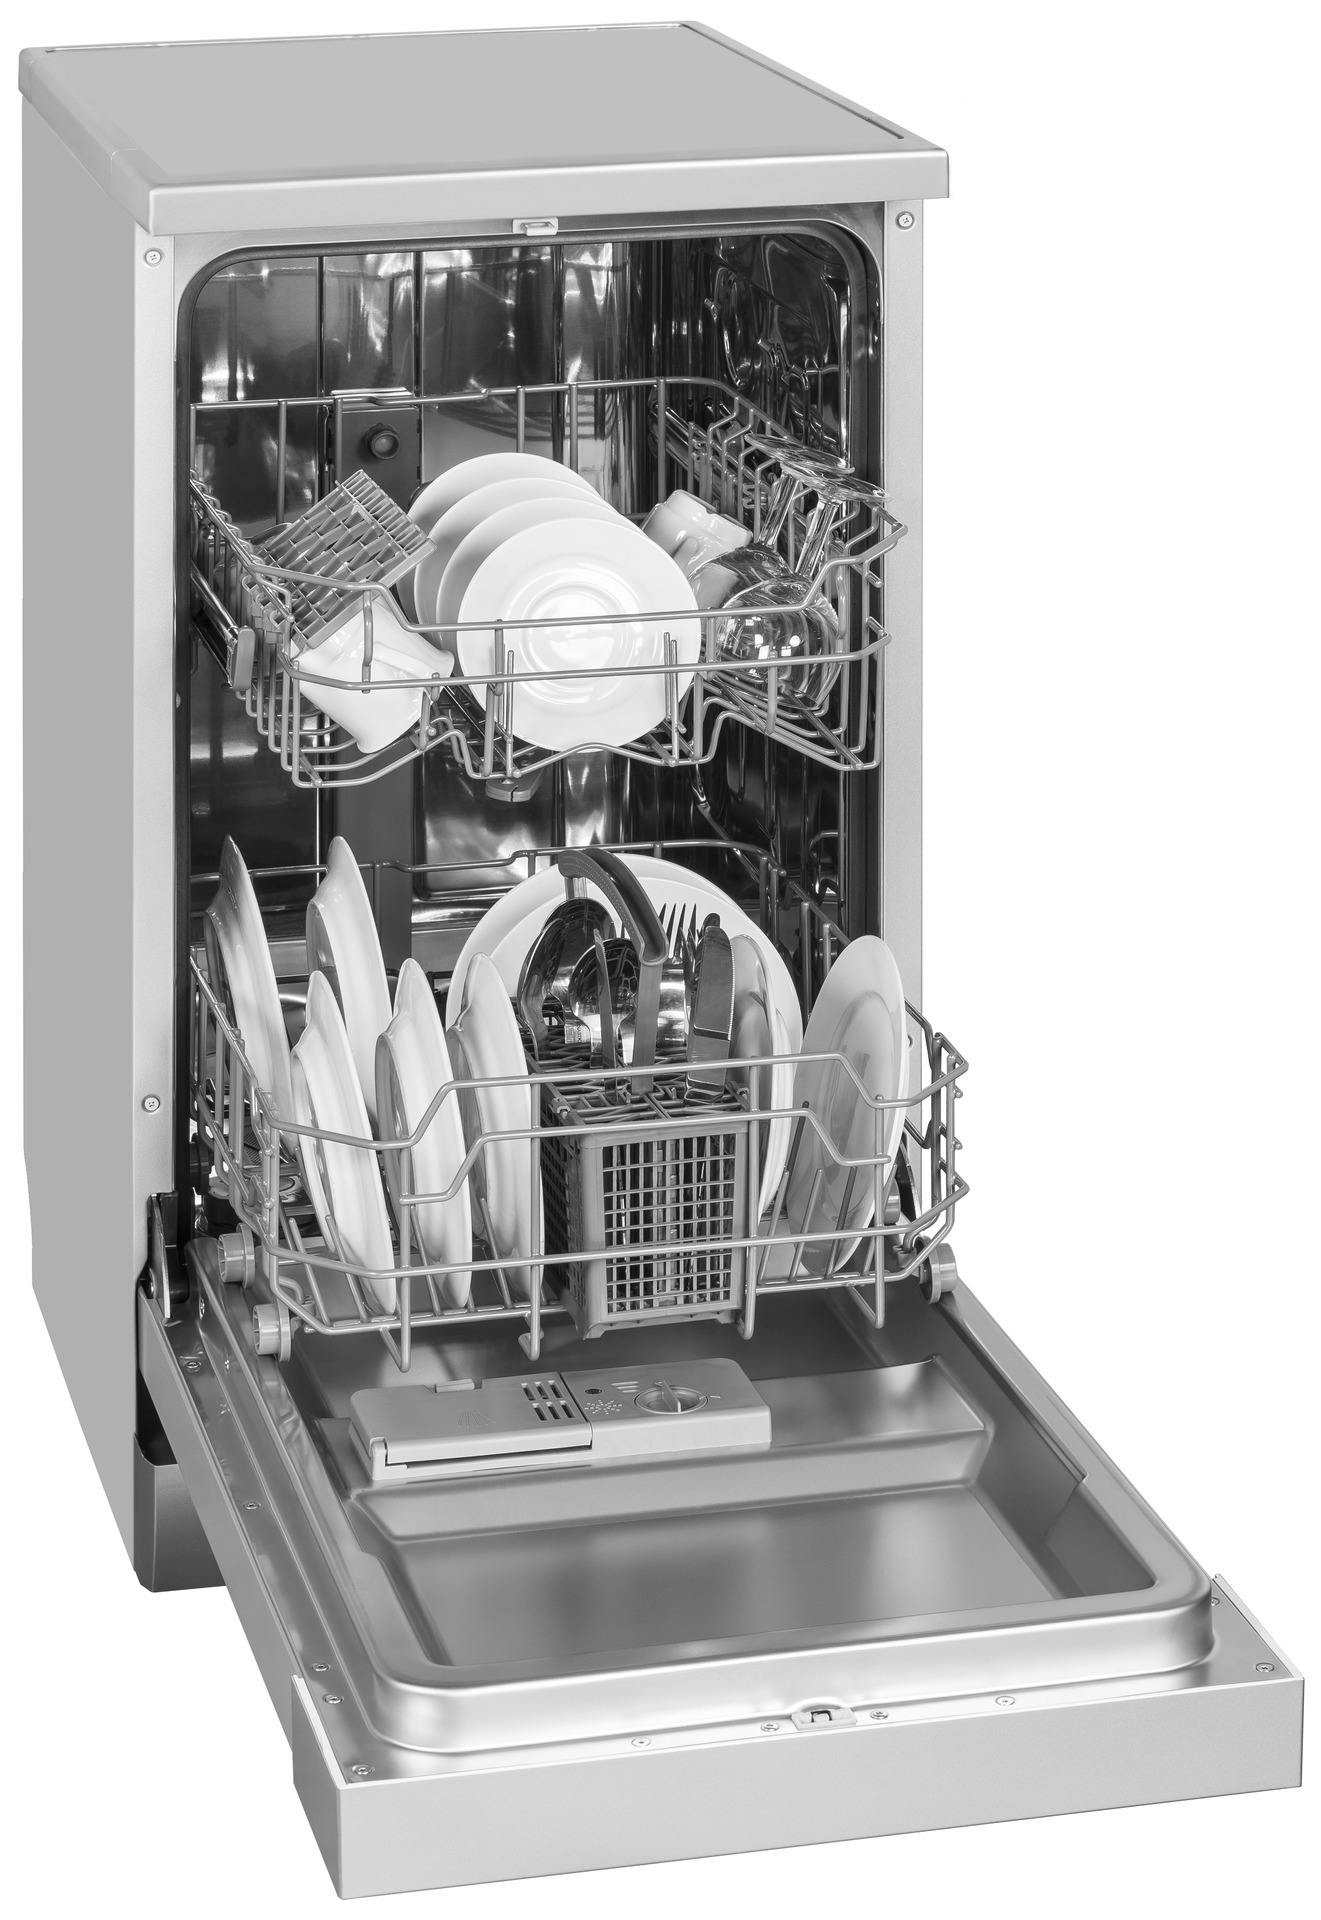 Посудомоечные машины 3 комплекта. Немецкая посудомойка GSP 863. Посудомоечная Teka df1 6700. Посудомоечная машина Manya df6002. Посудомоечная машина Ardo DWF 09l6w.